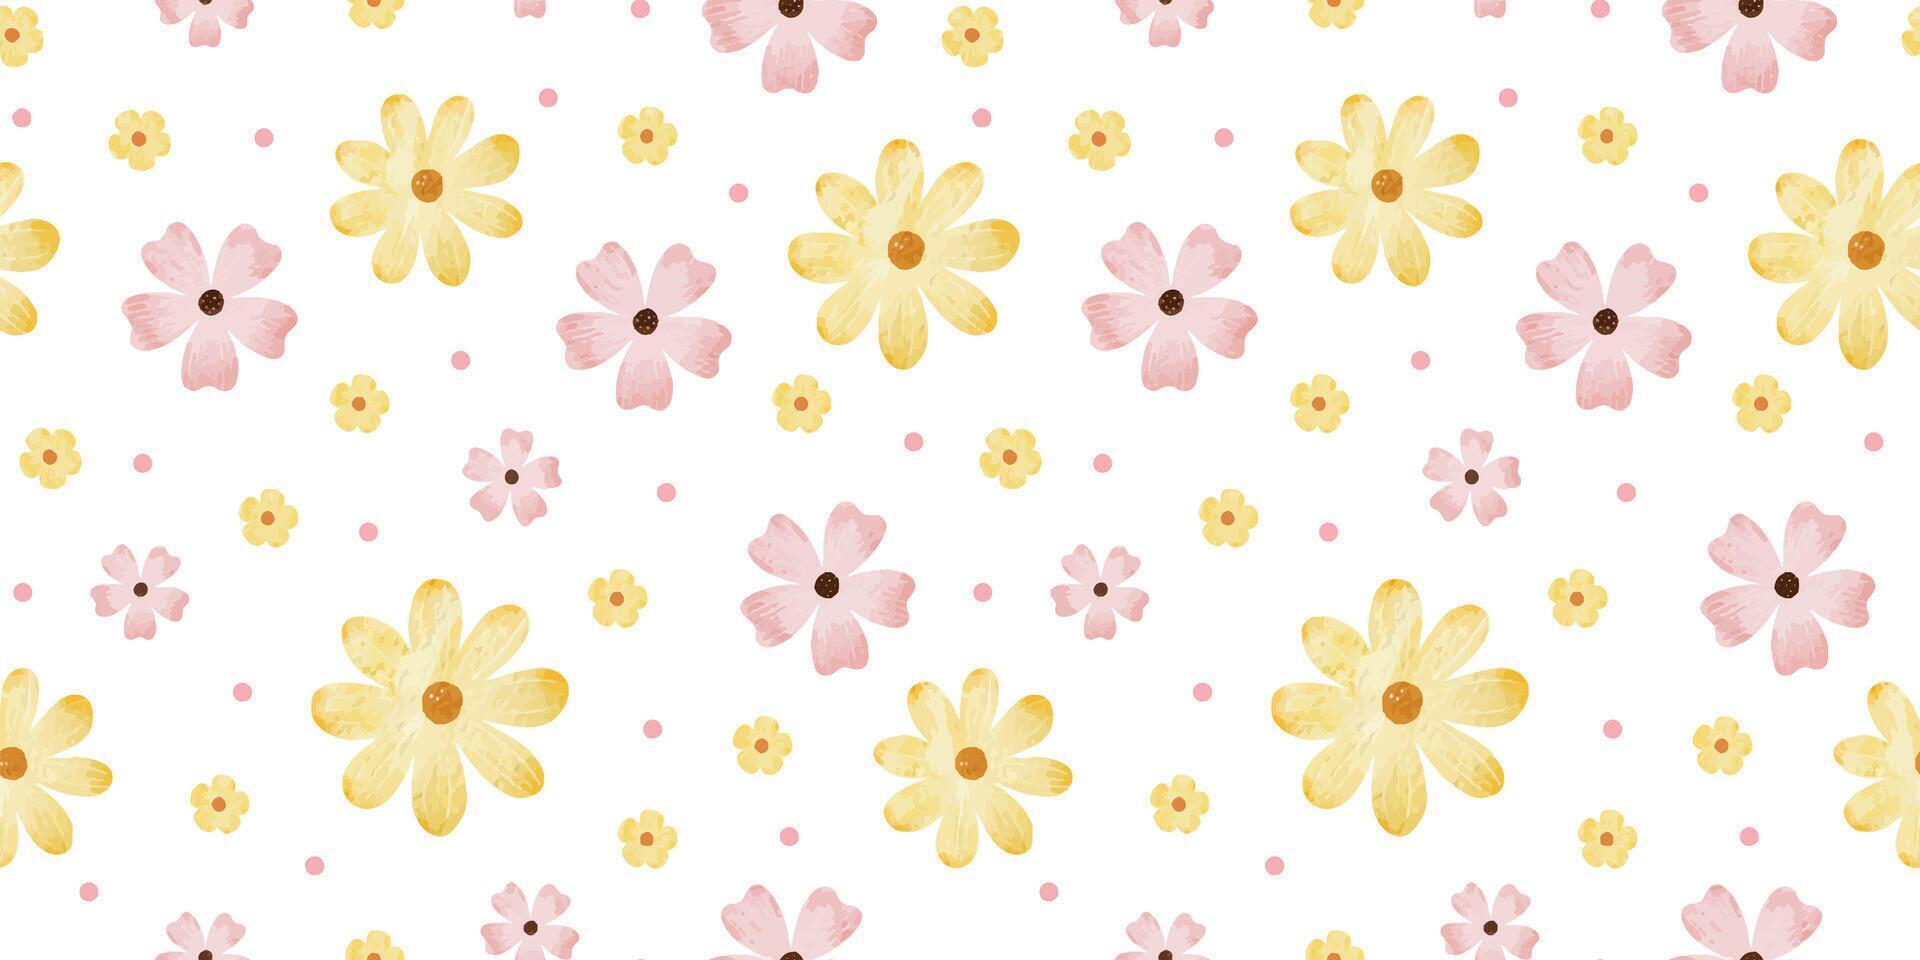 rosa, giallo fiori selvatici e punti. acquerello mano disegnato senza soluzione di continuità modello di semplice fiori. carino Stampa per tessuto, scrapbooking, involucro carta, design di carta vettore